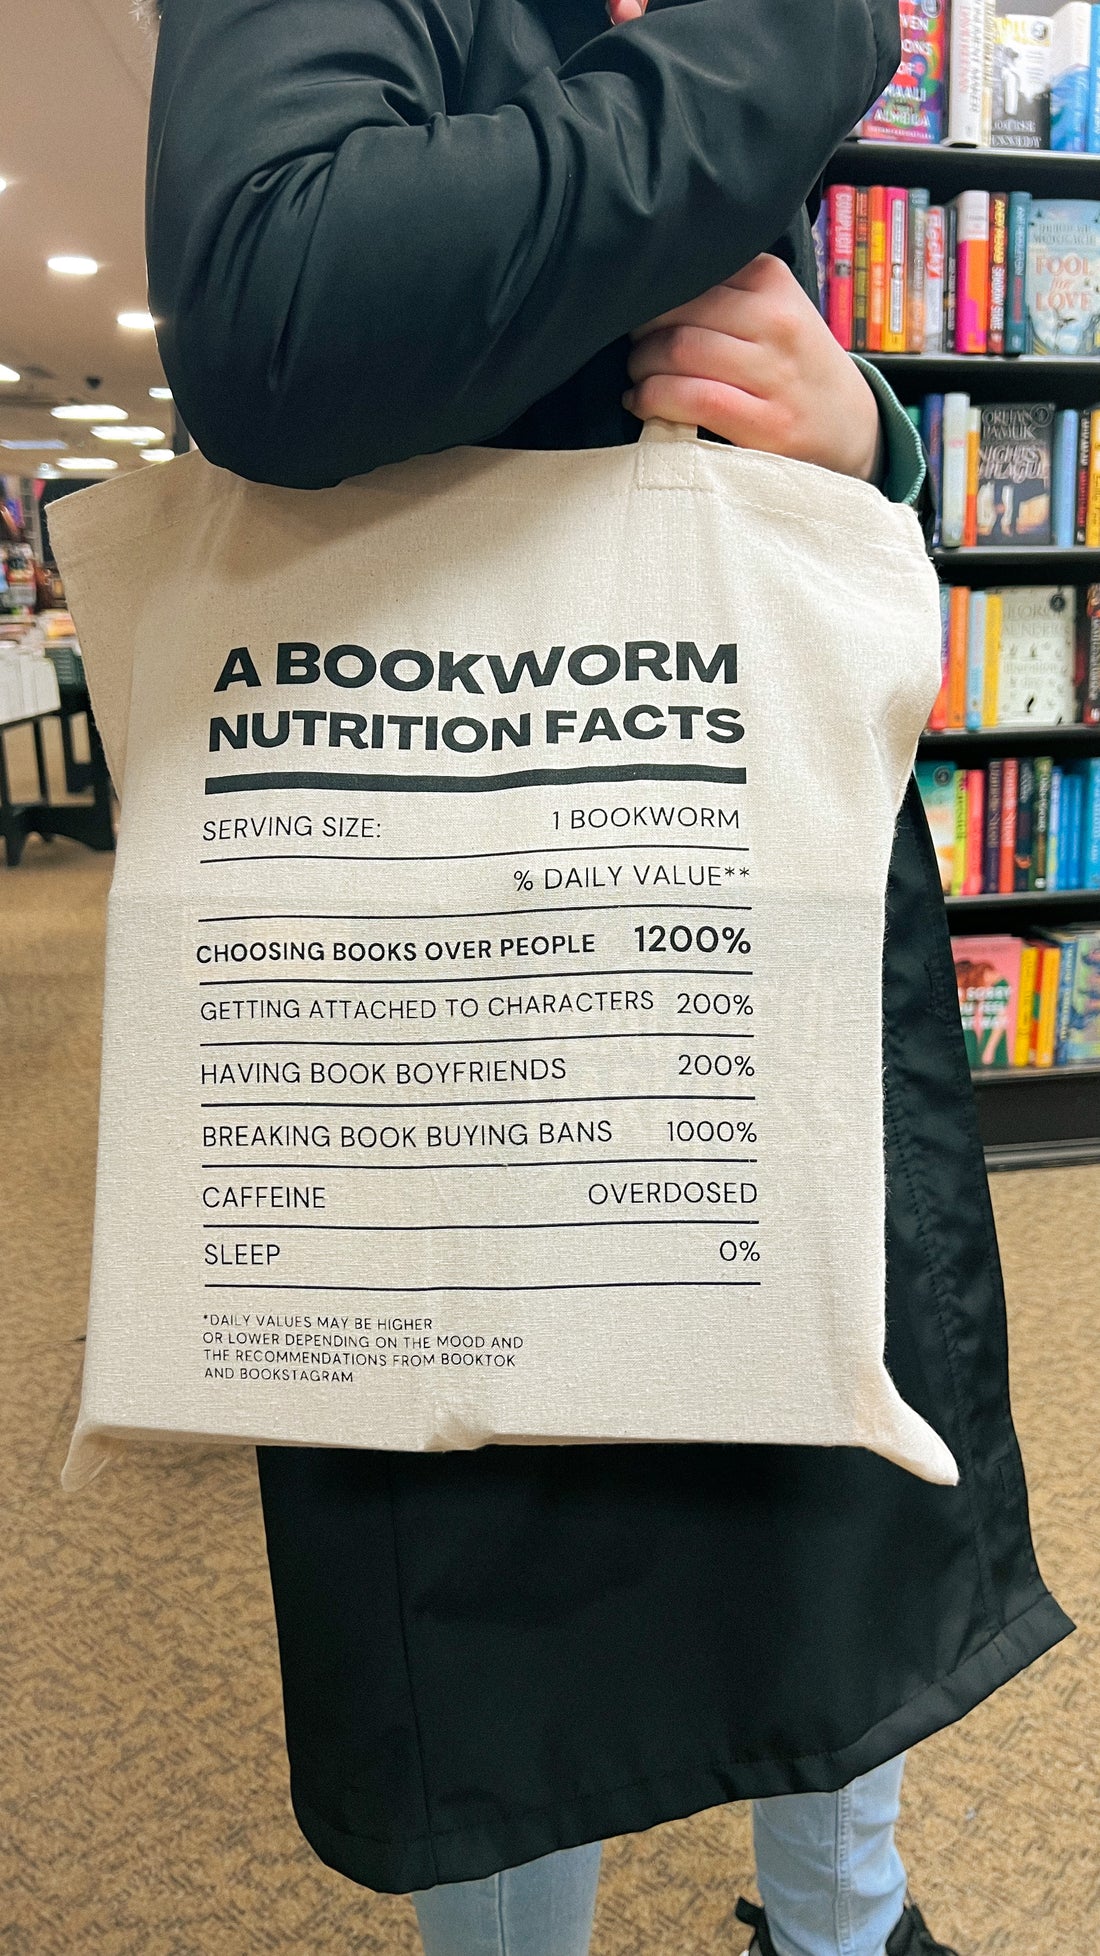 Book Bags